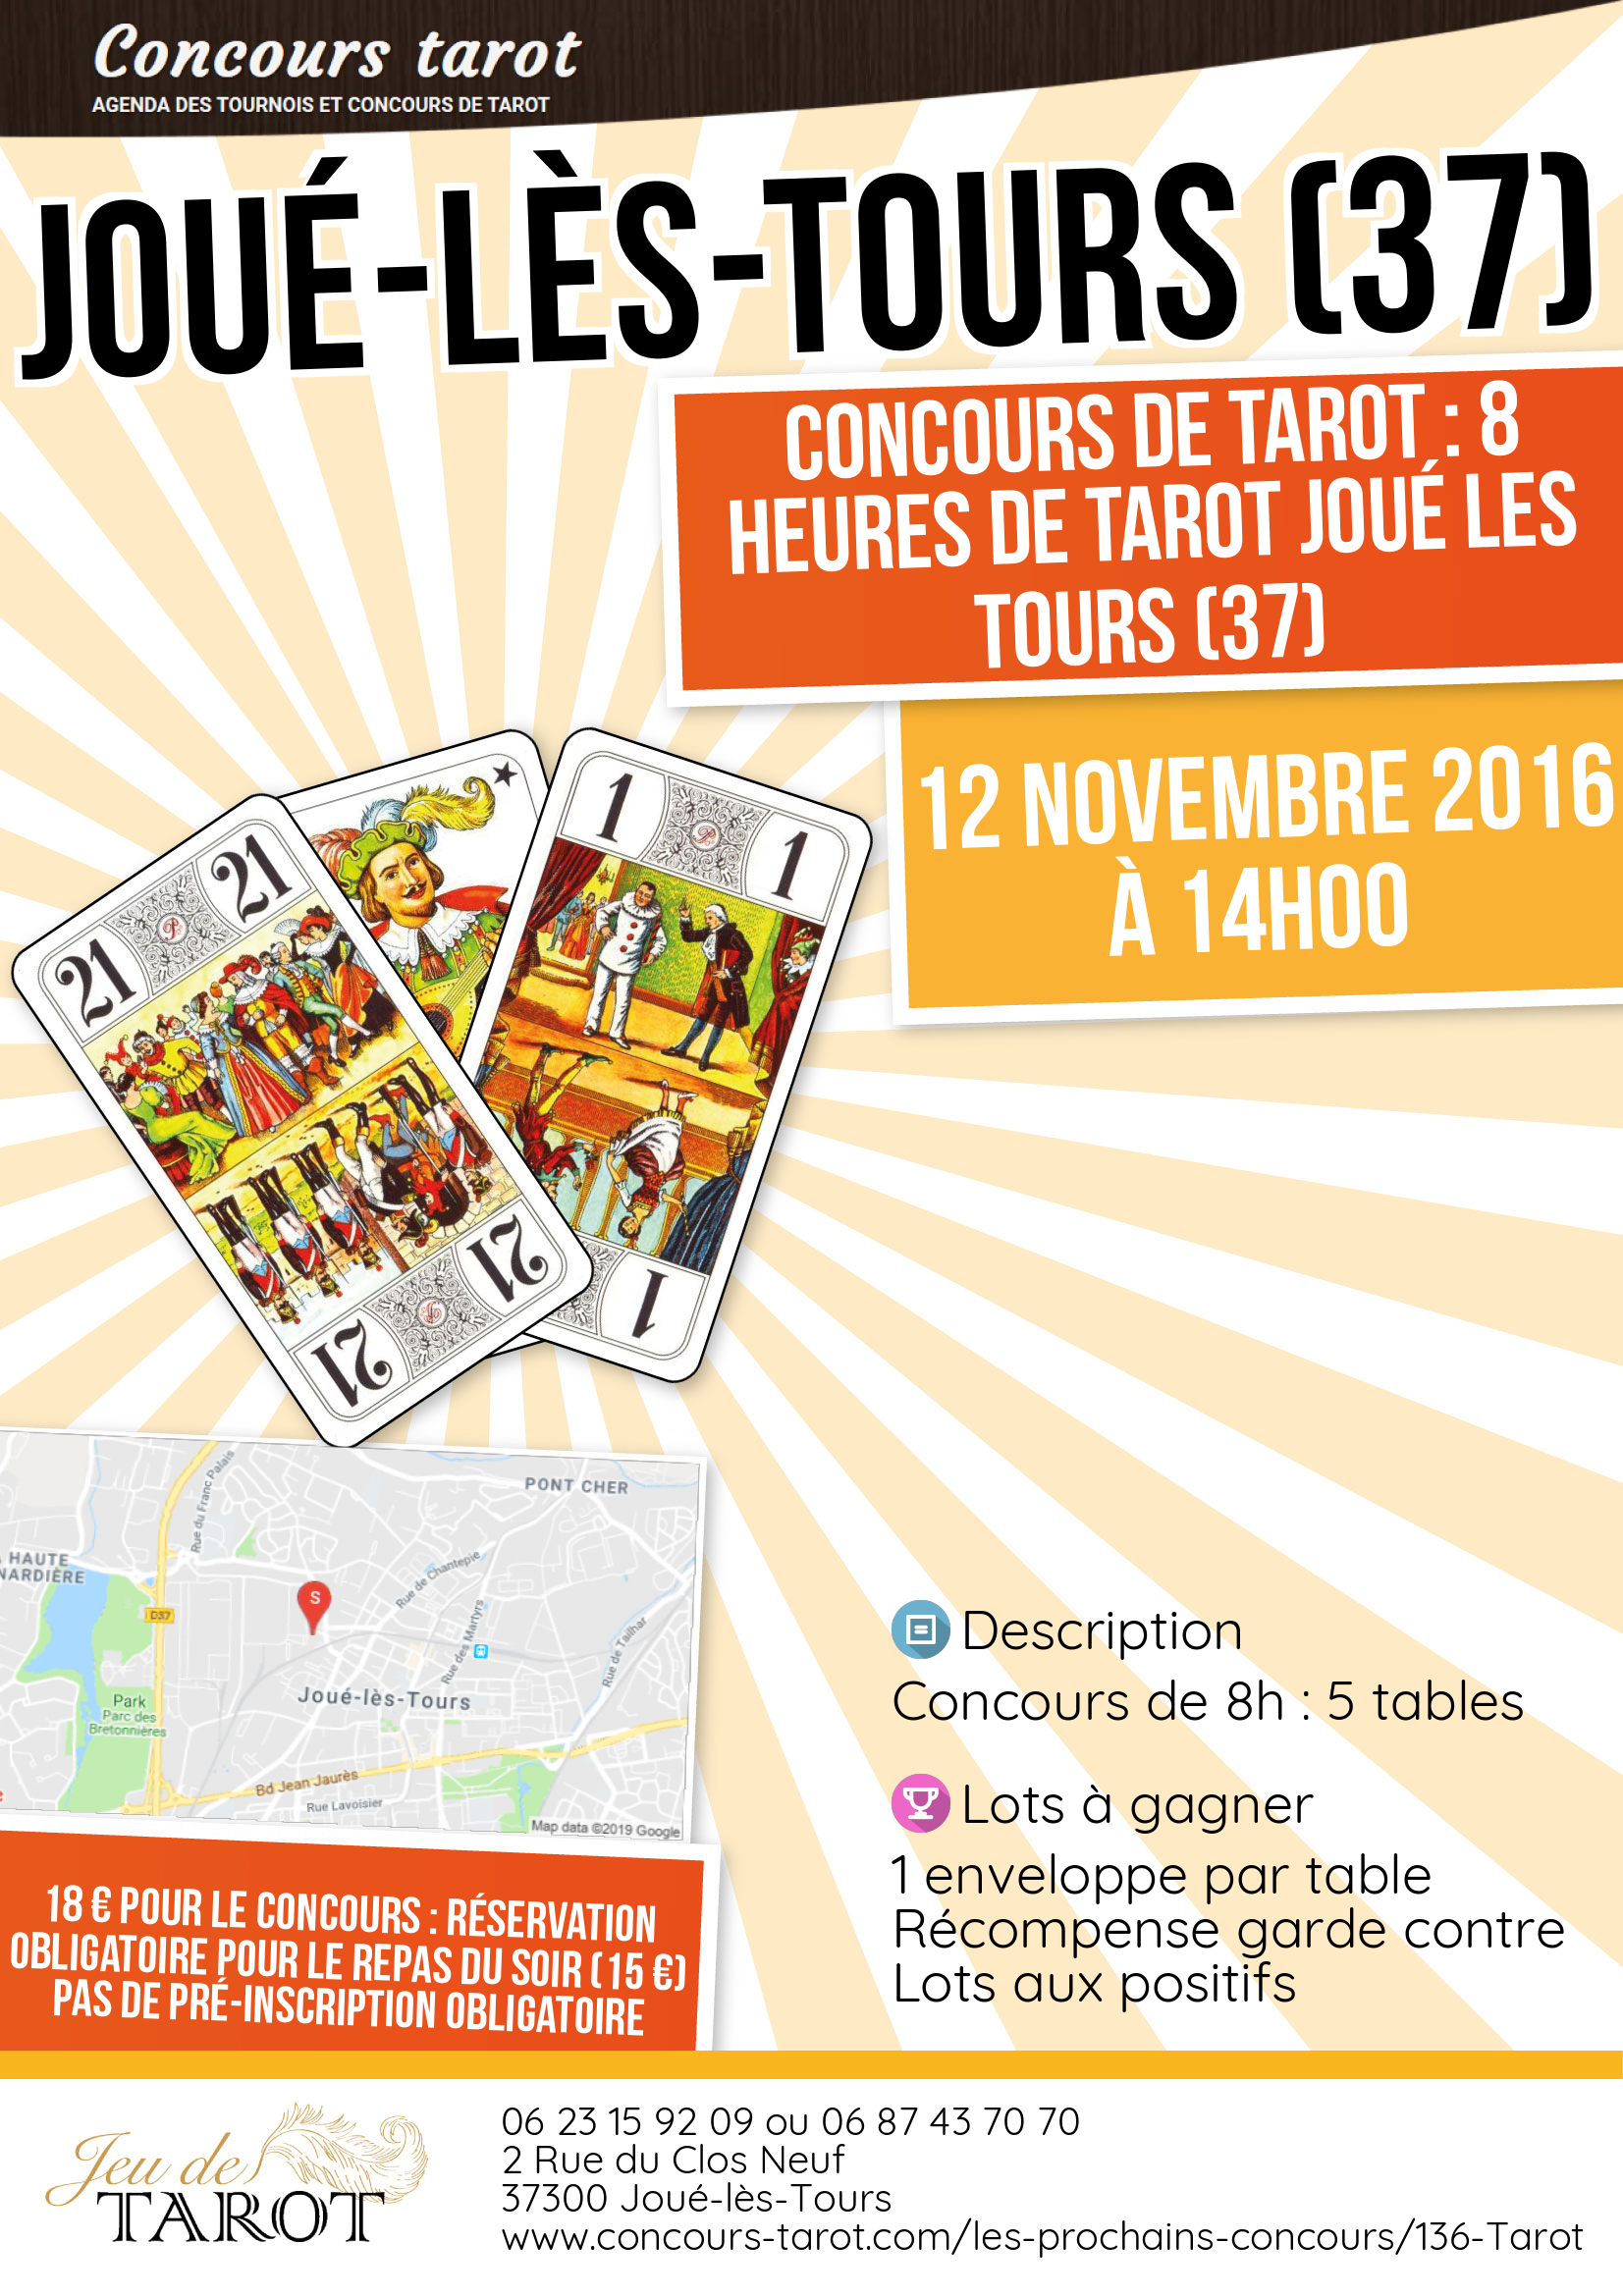 Concours de tarot  8 Heures de Tarot Joue les Tours 37